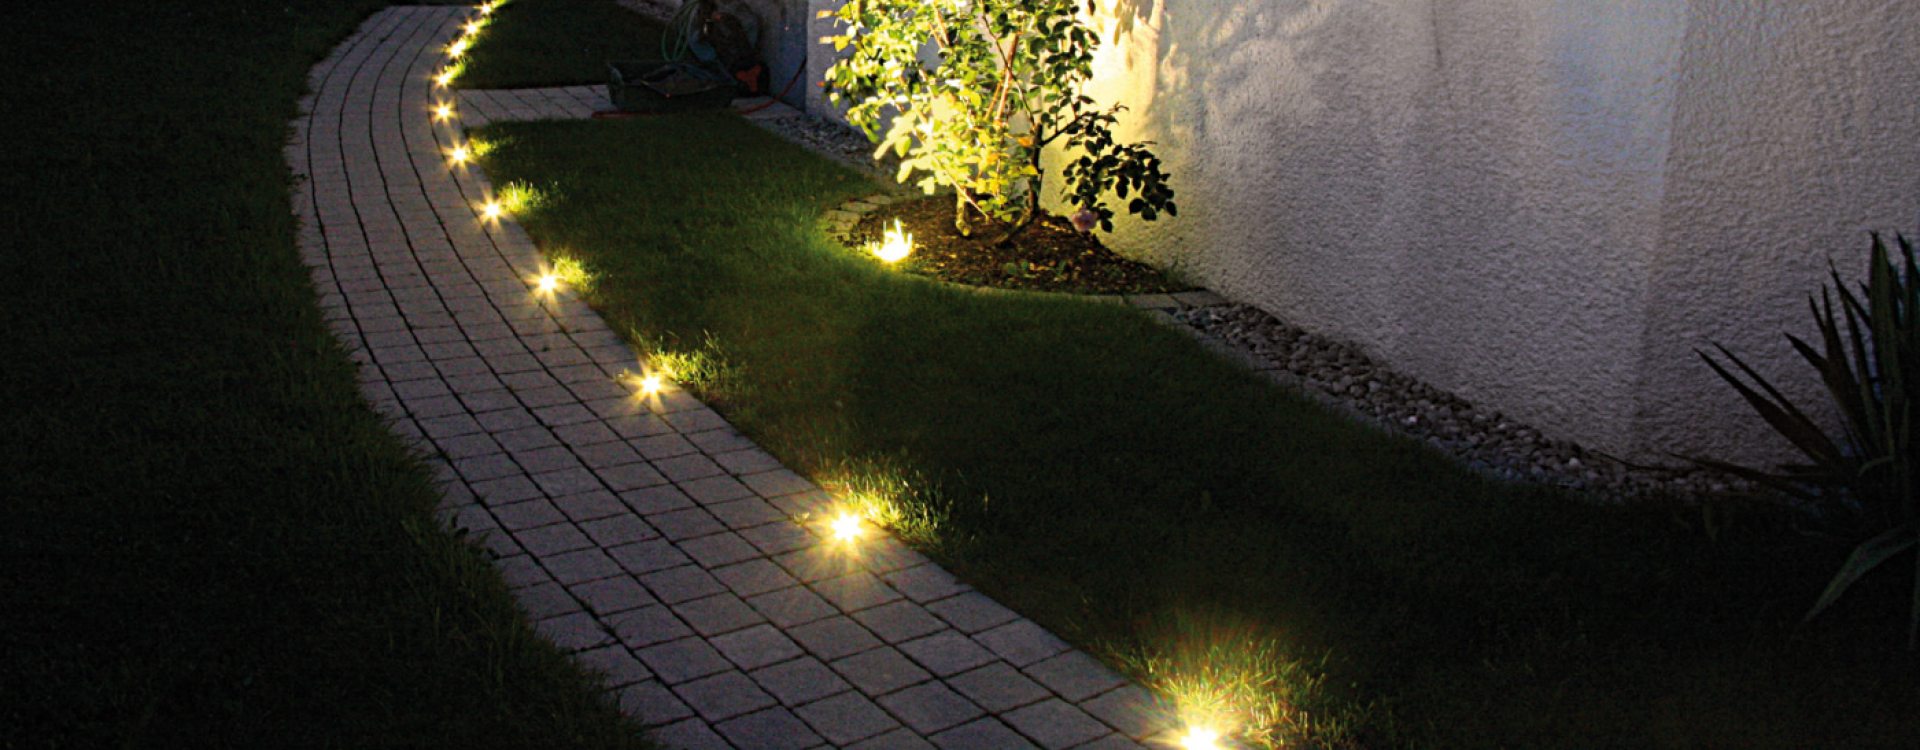 LichtSpot | Licht im Garten | Metten Stein+Design